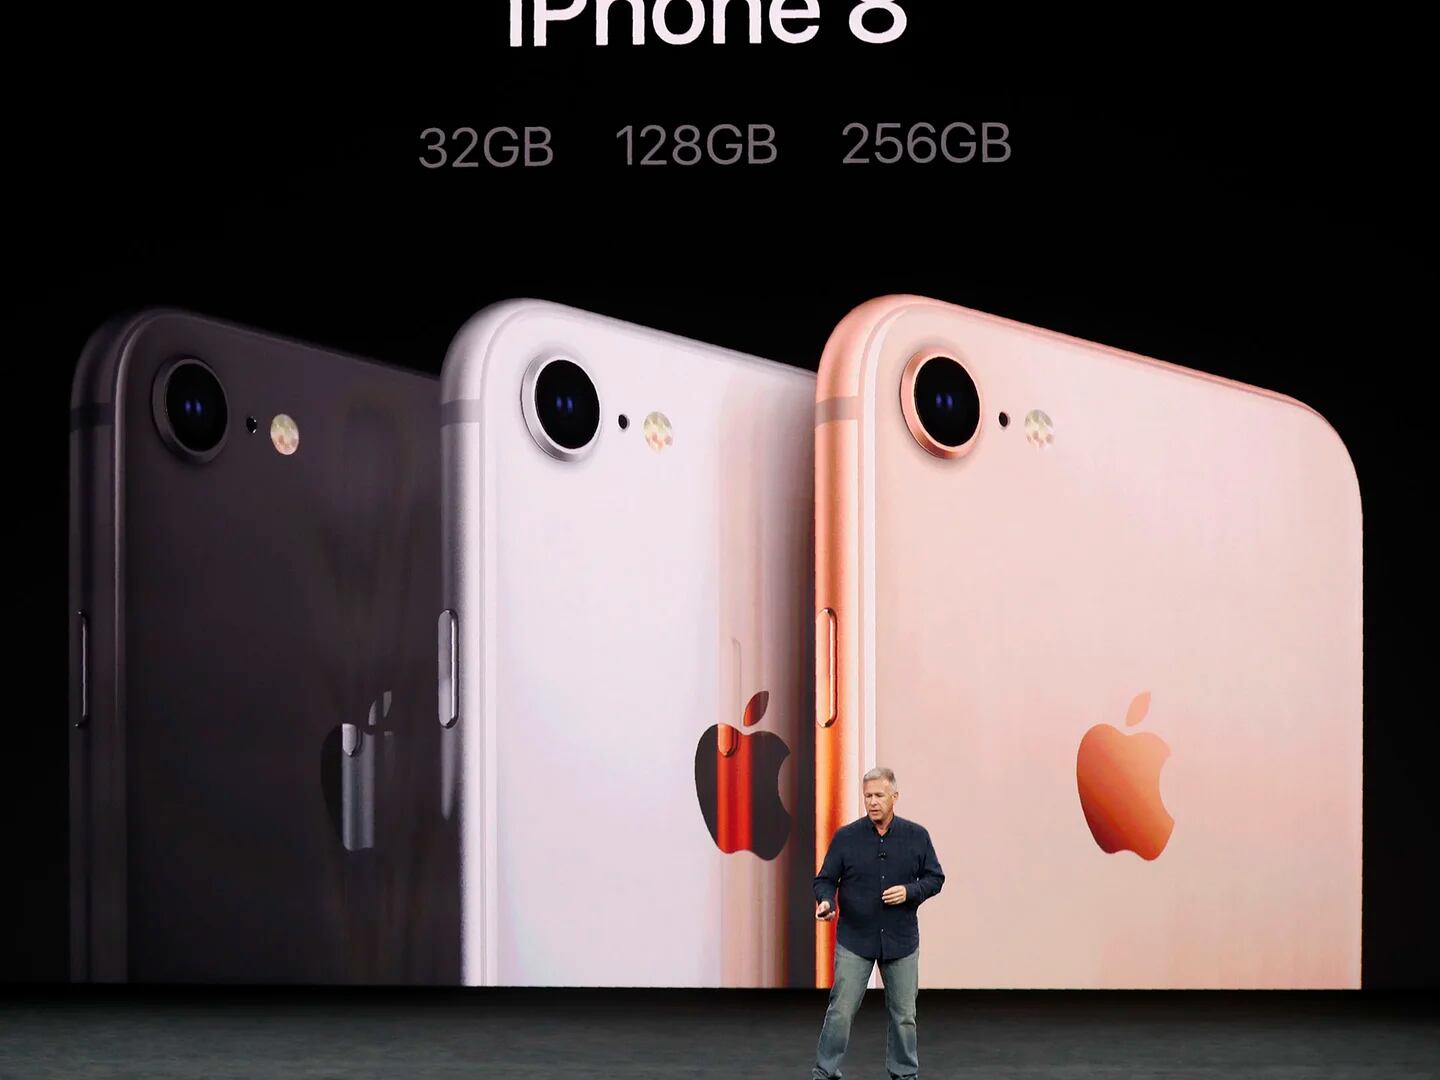 iPhone X, iPhone 8 y iPhone 8 Plus: así son sus cámaras y la